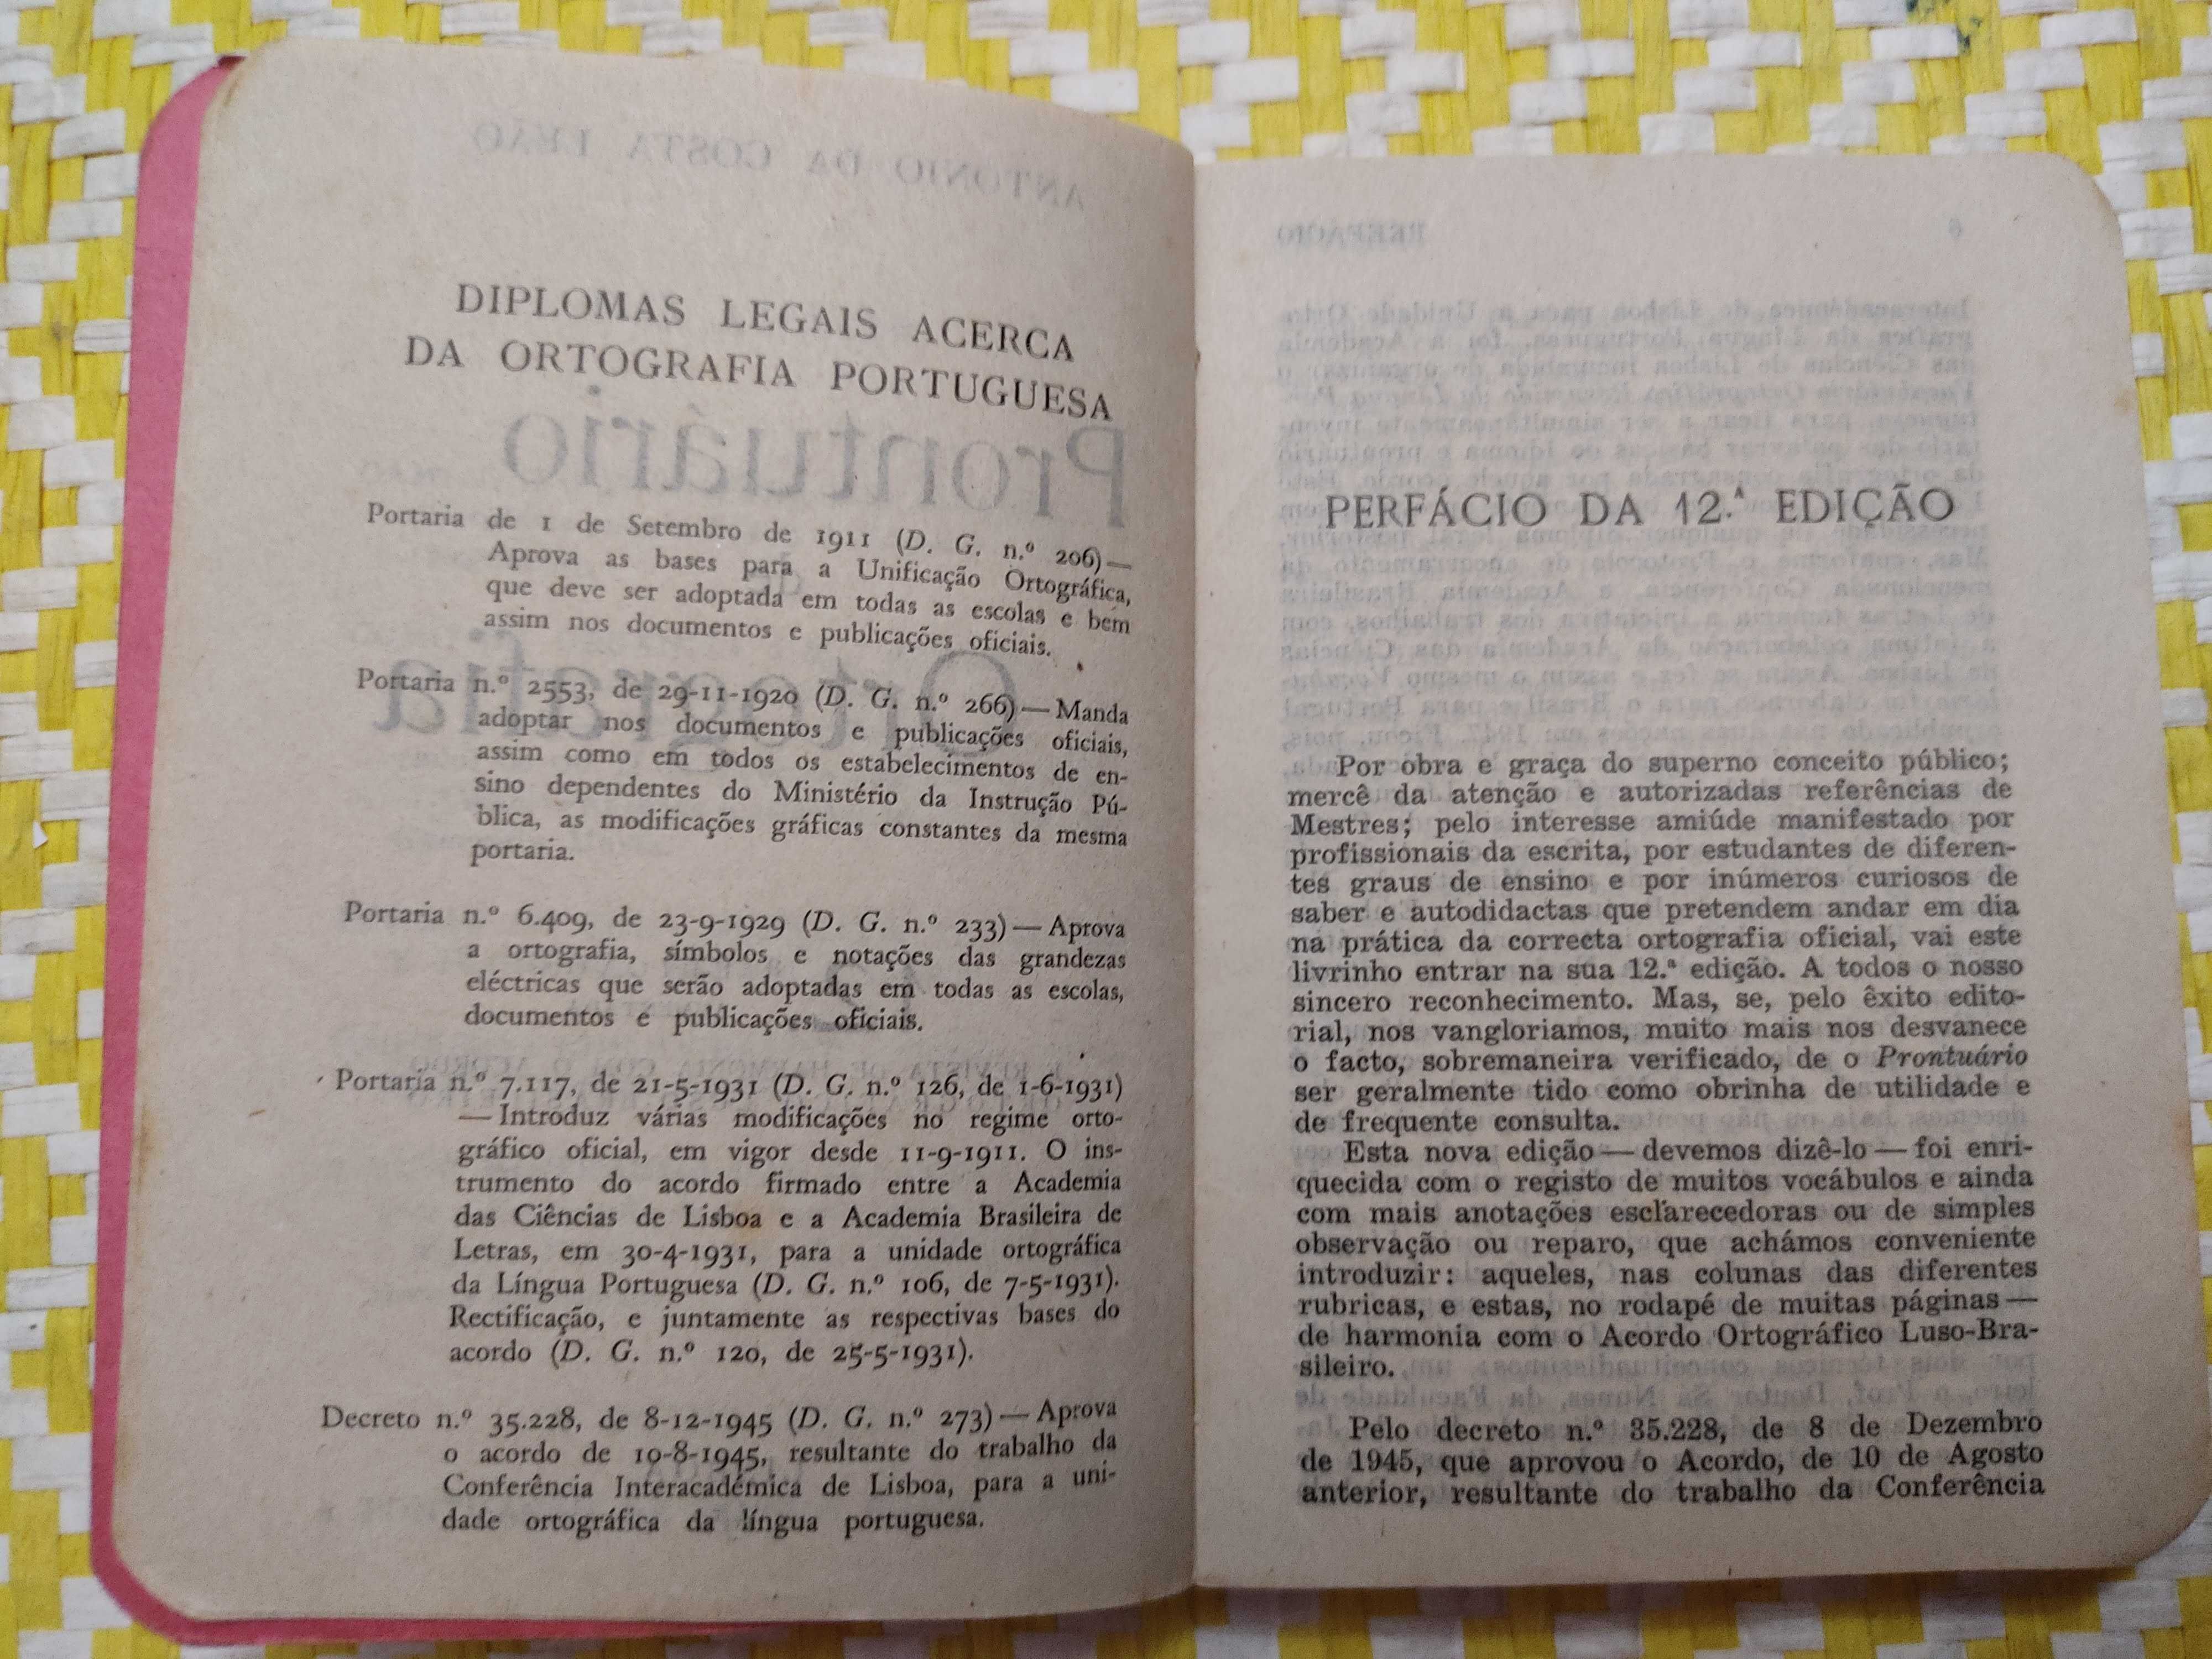 PRONTUÁRIO DE ORTOGRAFIA 
Acordo Ortográfico Luso-Brasileiro
ANO1951